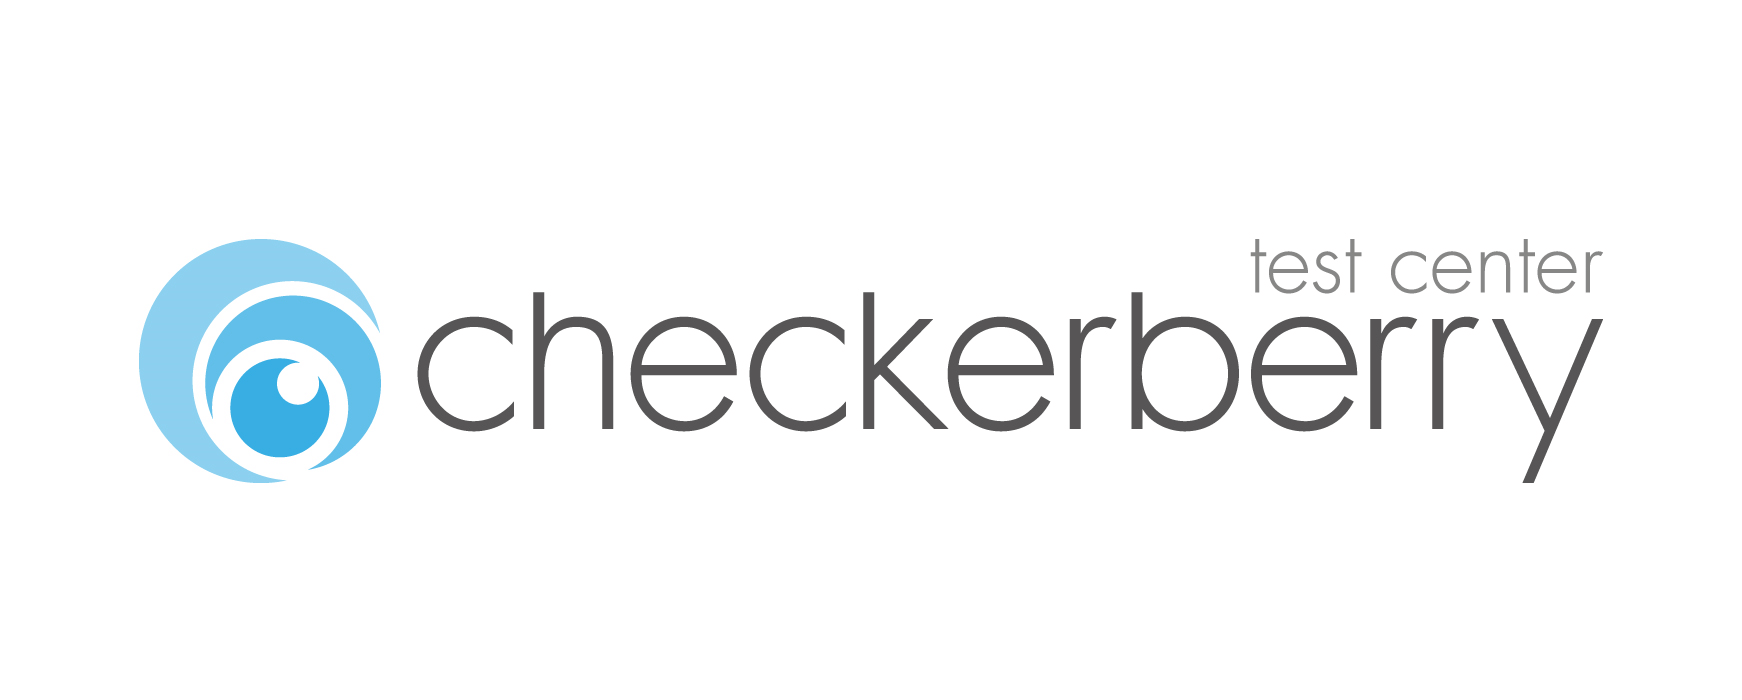 Logo checkerberry test center